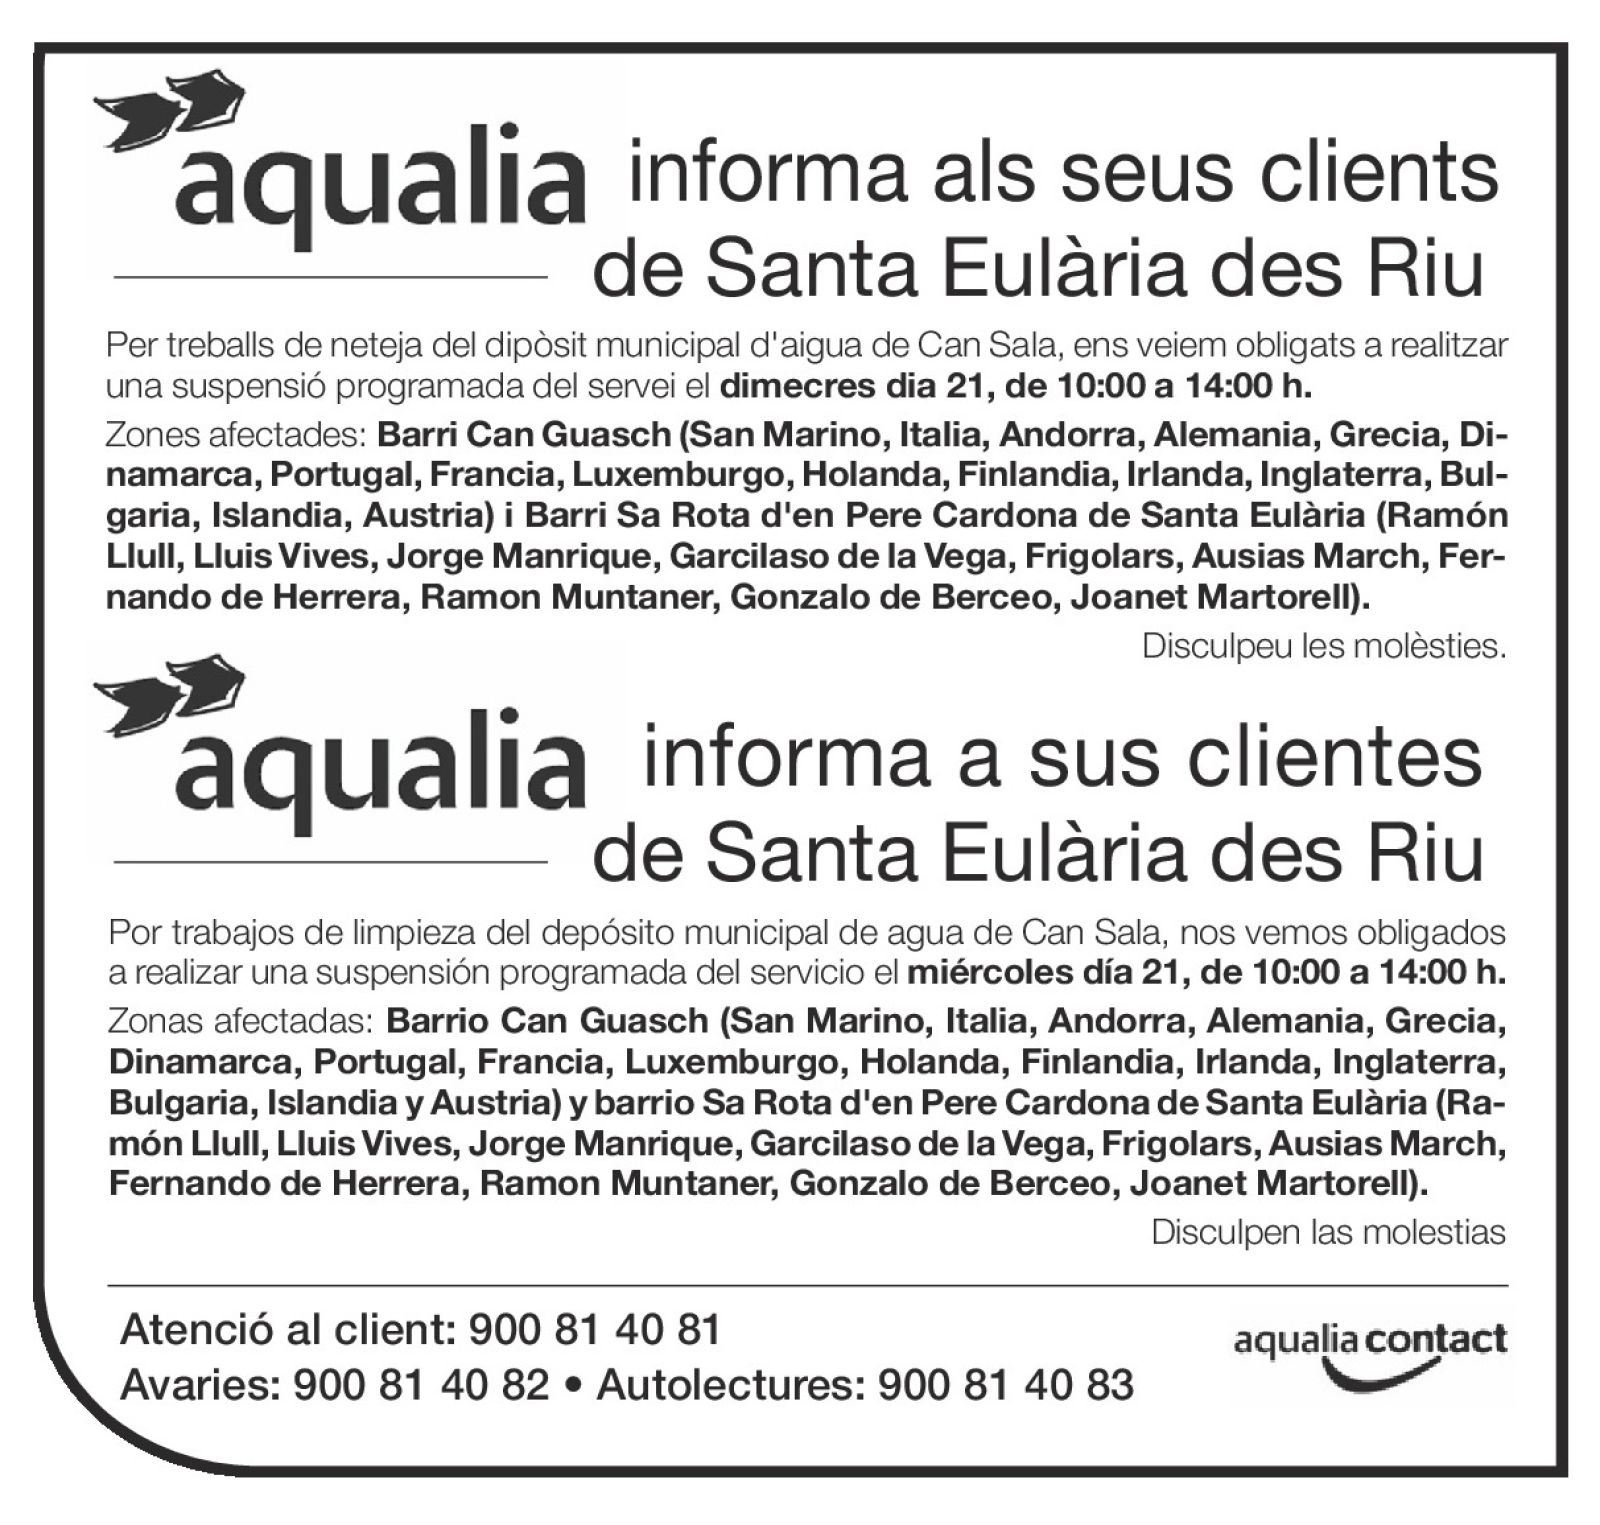 Suspensión temporal del suministro de agua en zonas de Santa Eulària des Riu el 21 de diciembre.